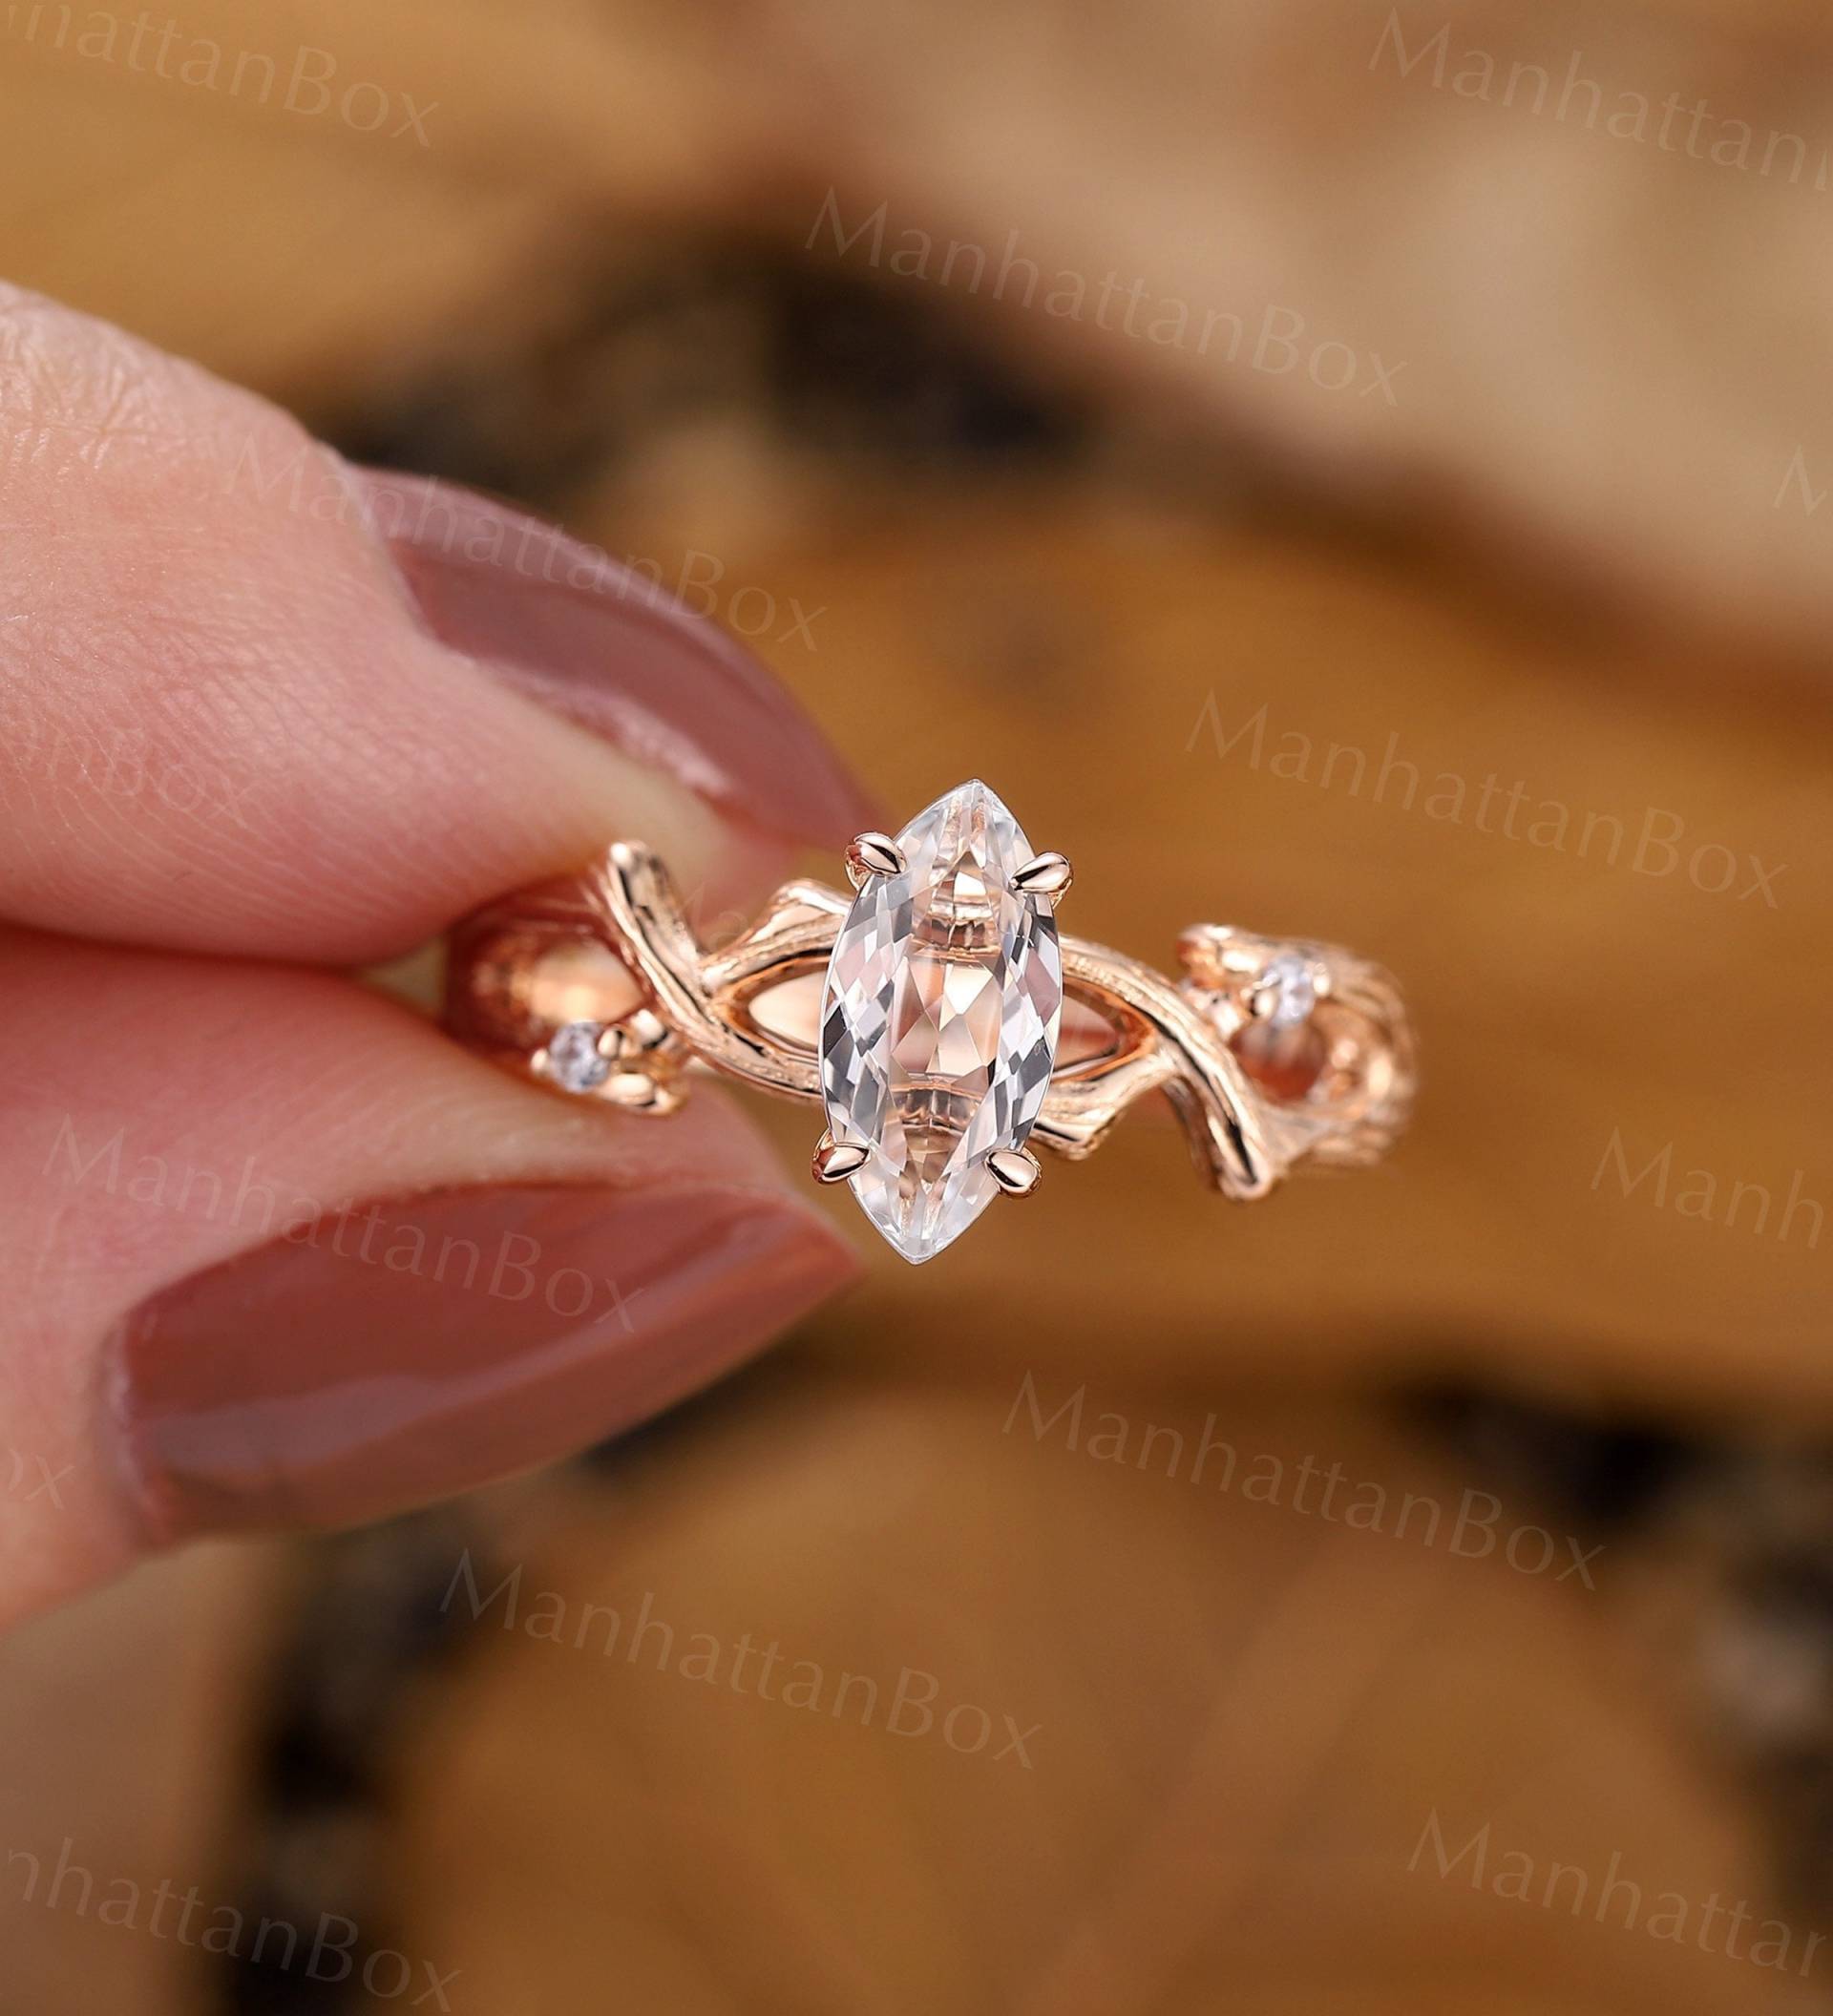 Wilder Zweig Marquiseschliff Moissanit Verlobungsring Art Deco Baumrinde Brautring Roségold Diamant Twist Ehering Natur Inspirierter Ring von ManhattanBox